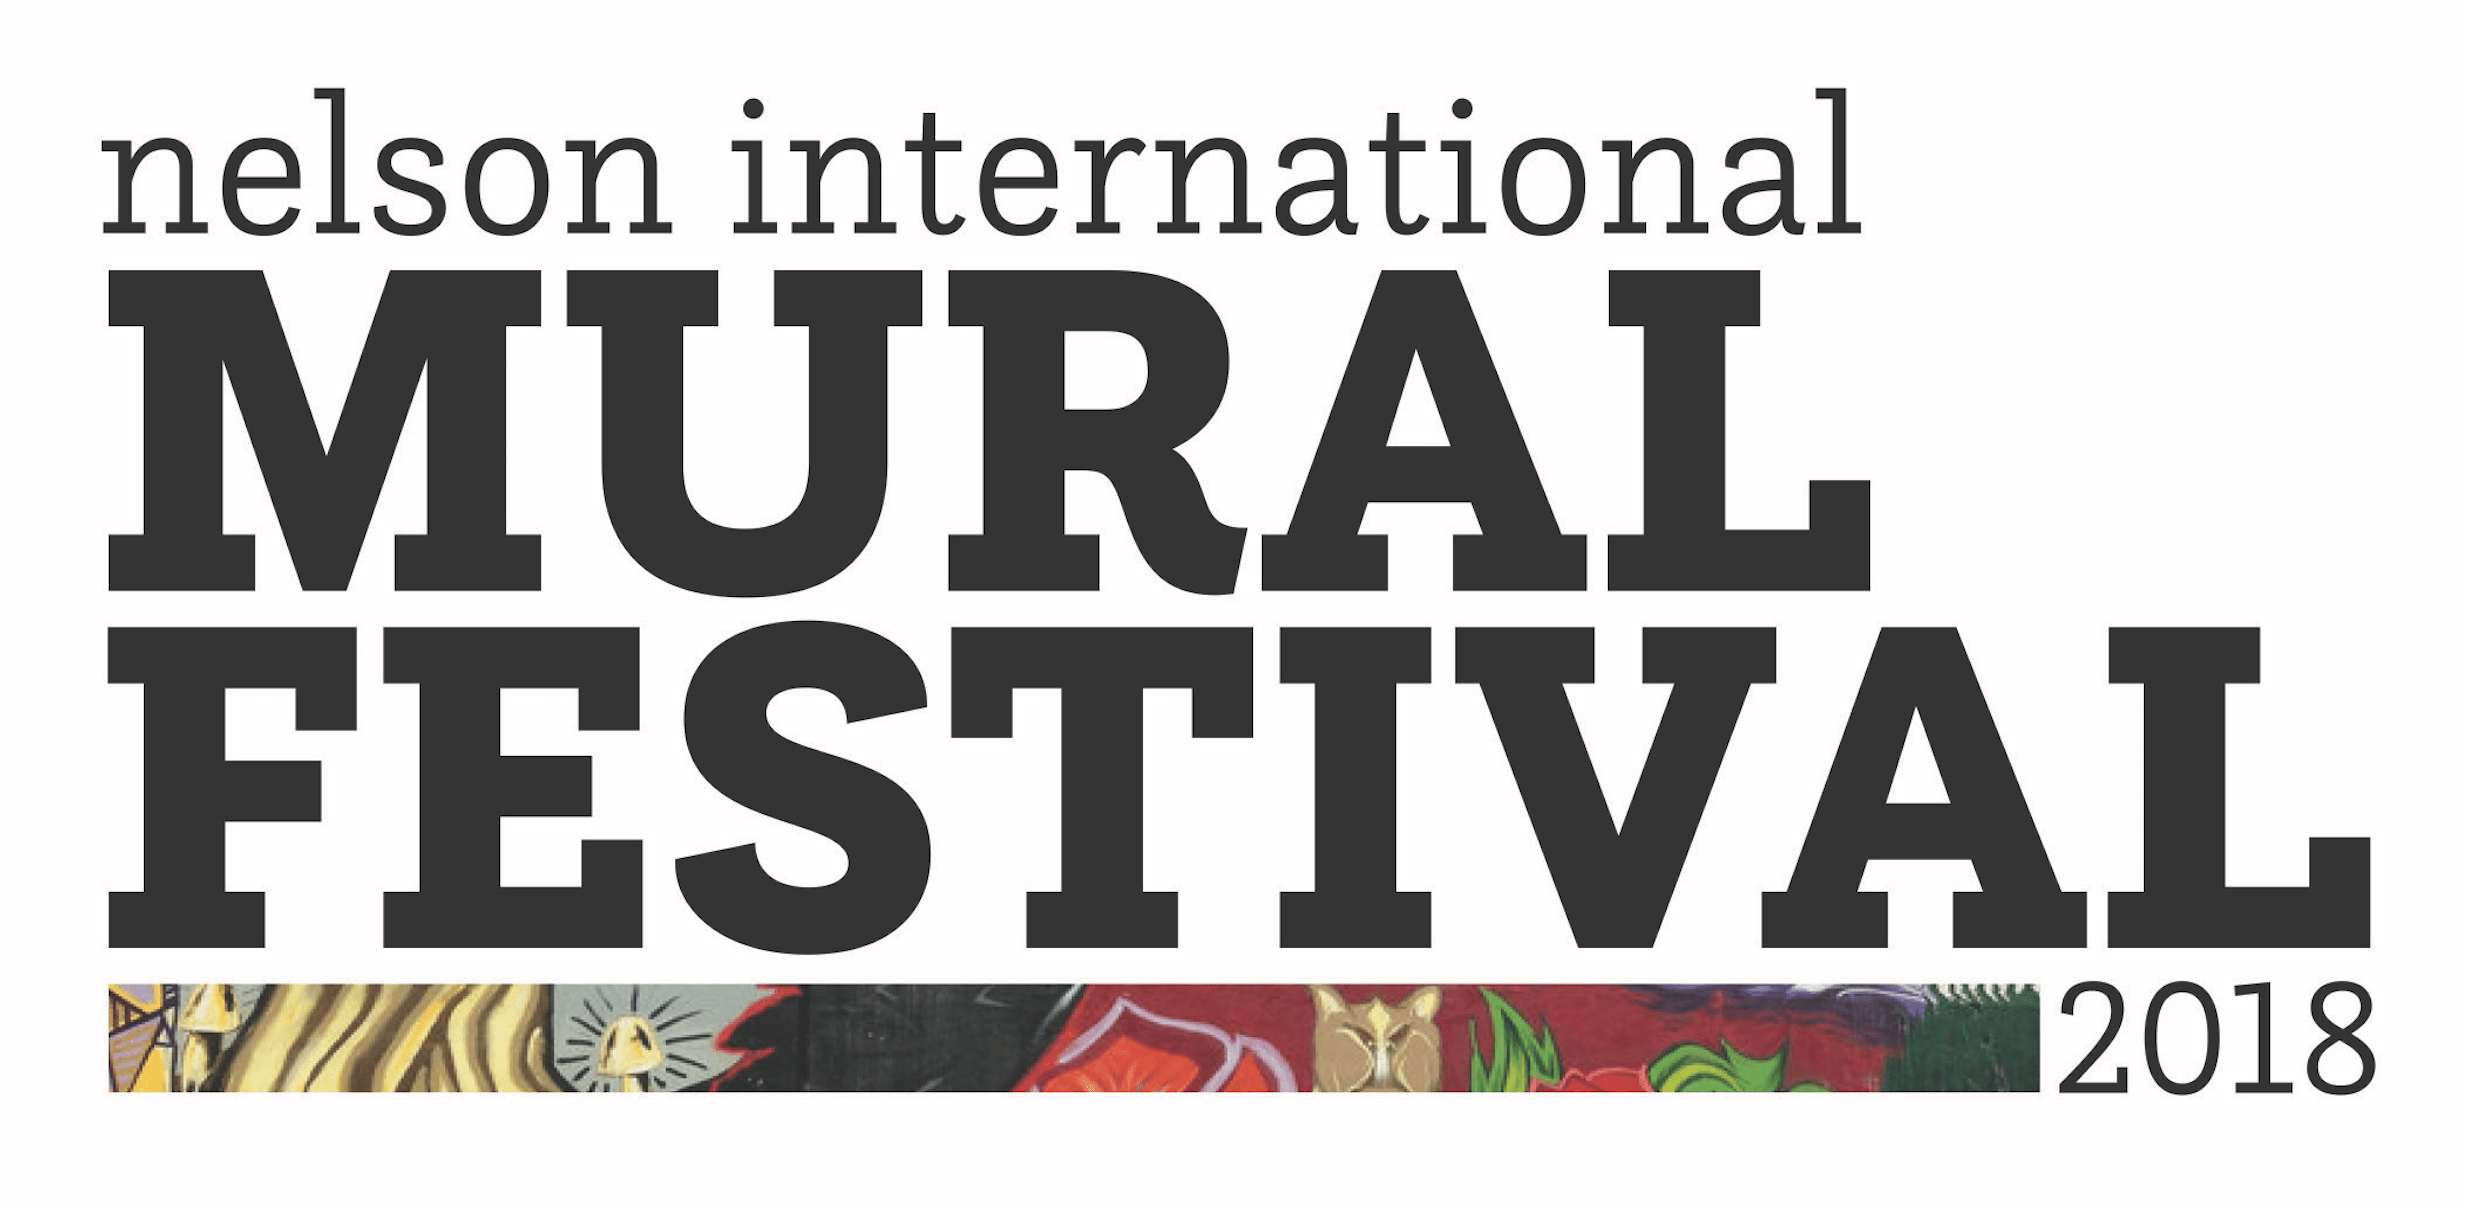 Call for Muralists: Nelson International Mural Festival